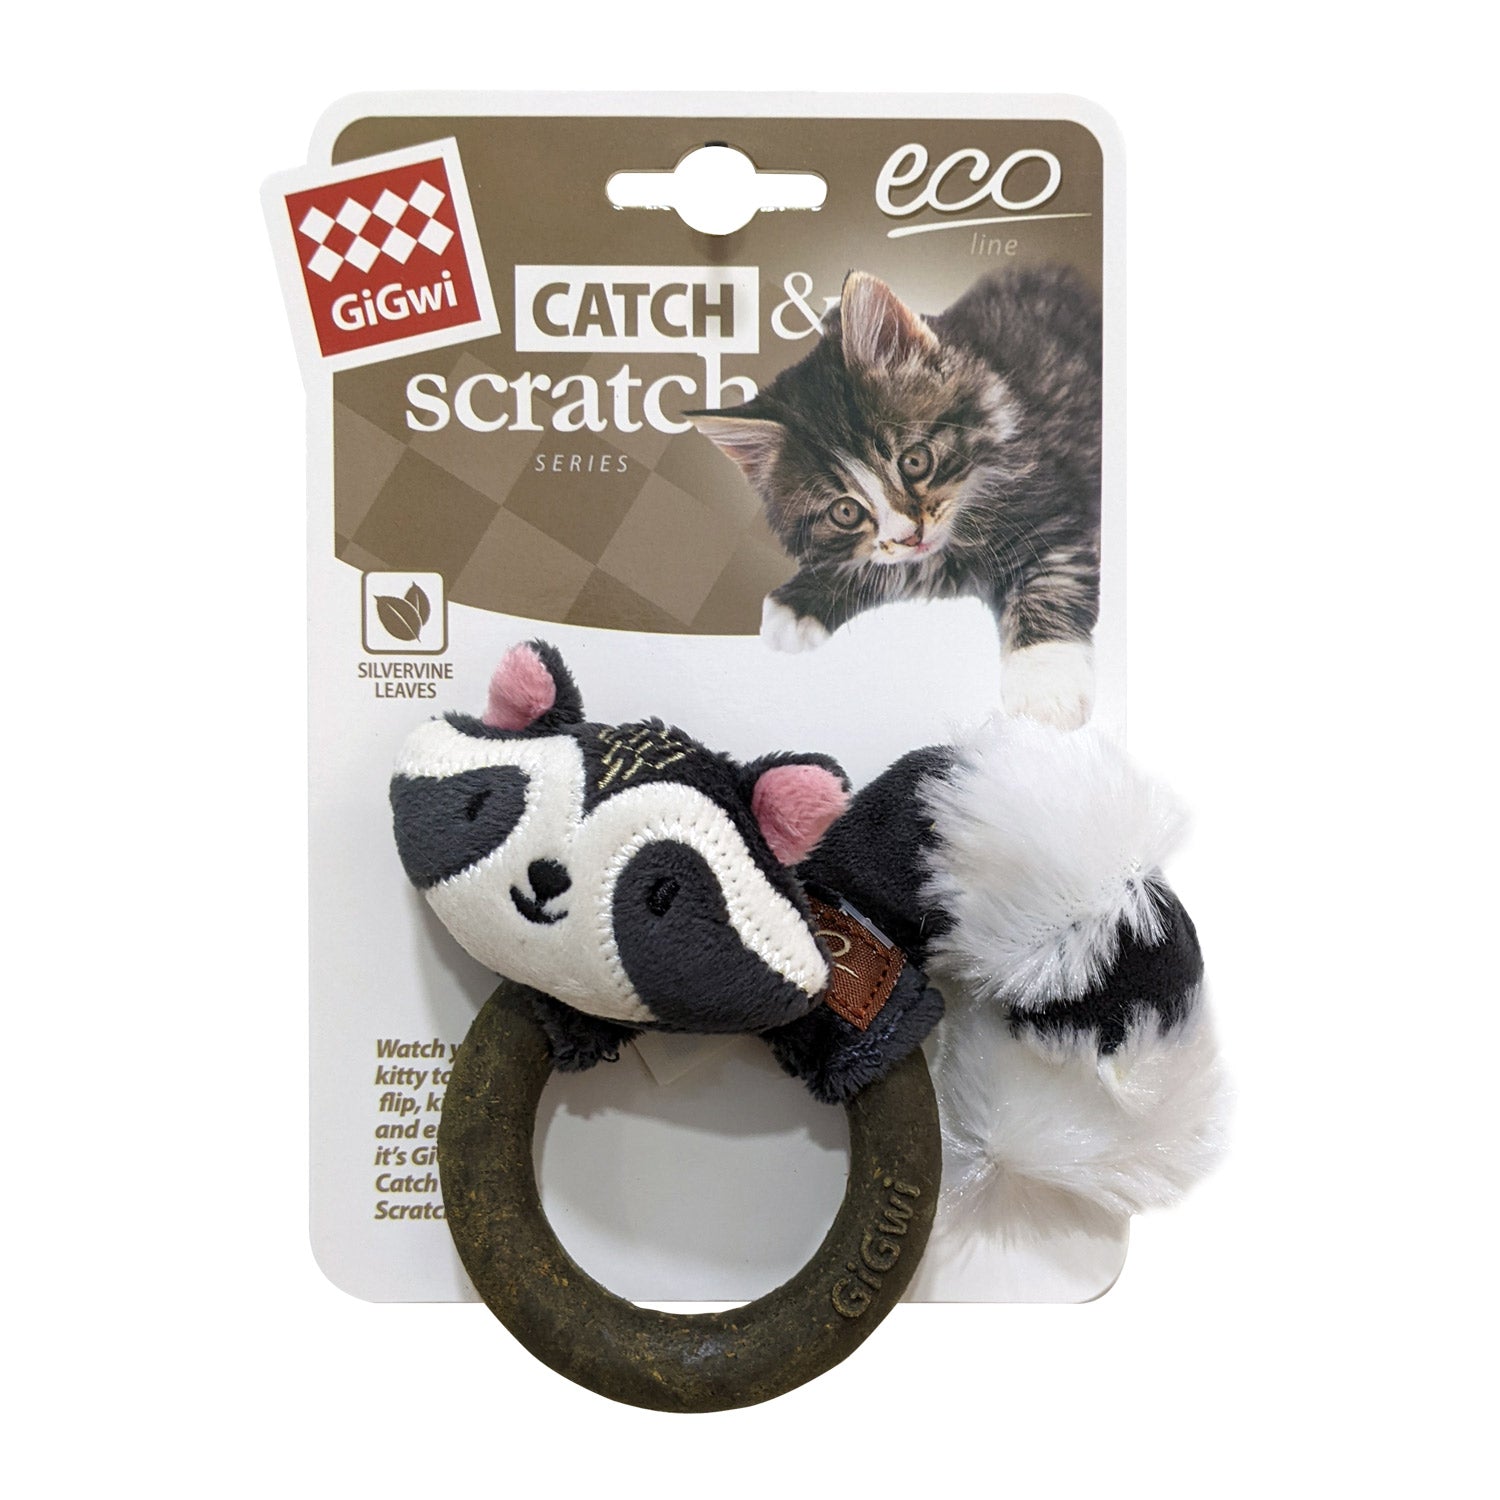 GIGWI Catch & Scratch Eco Line (Raccoon)